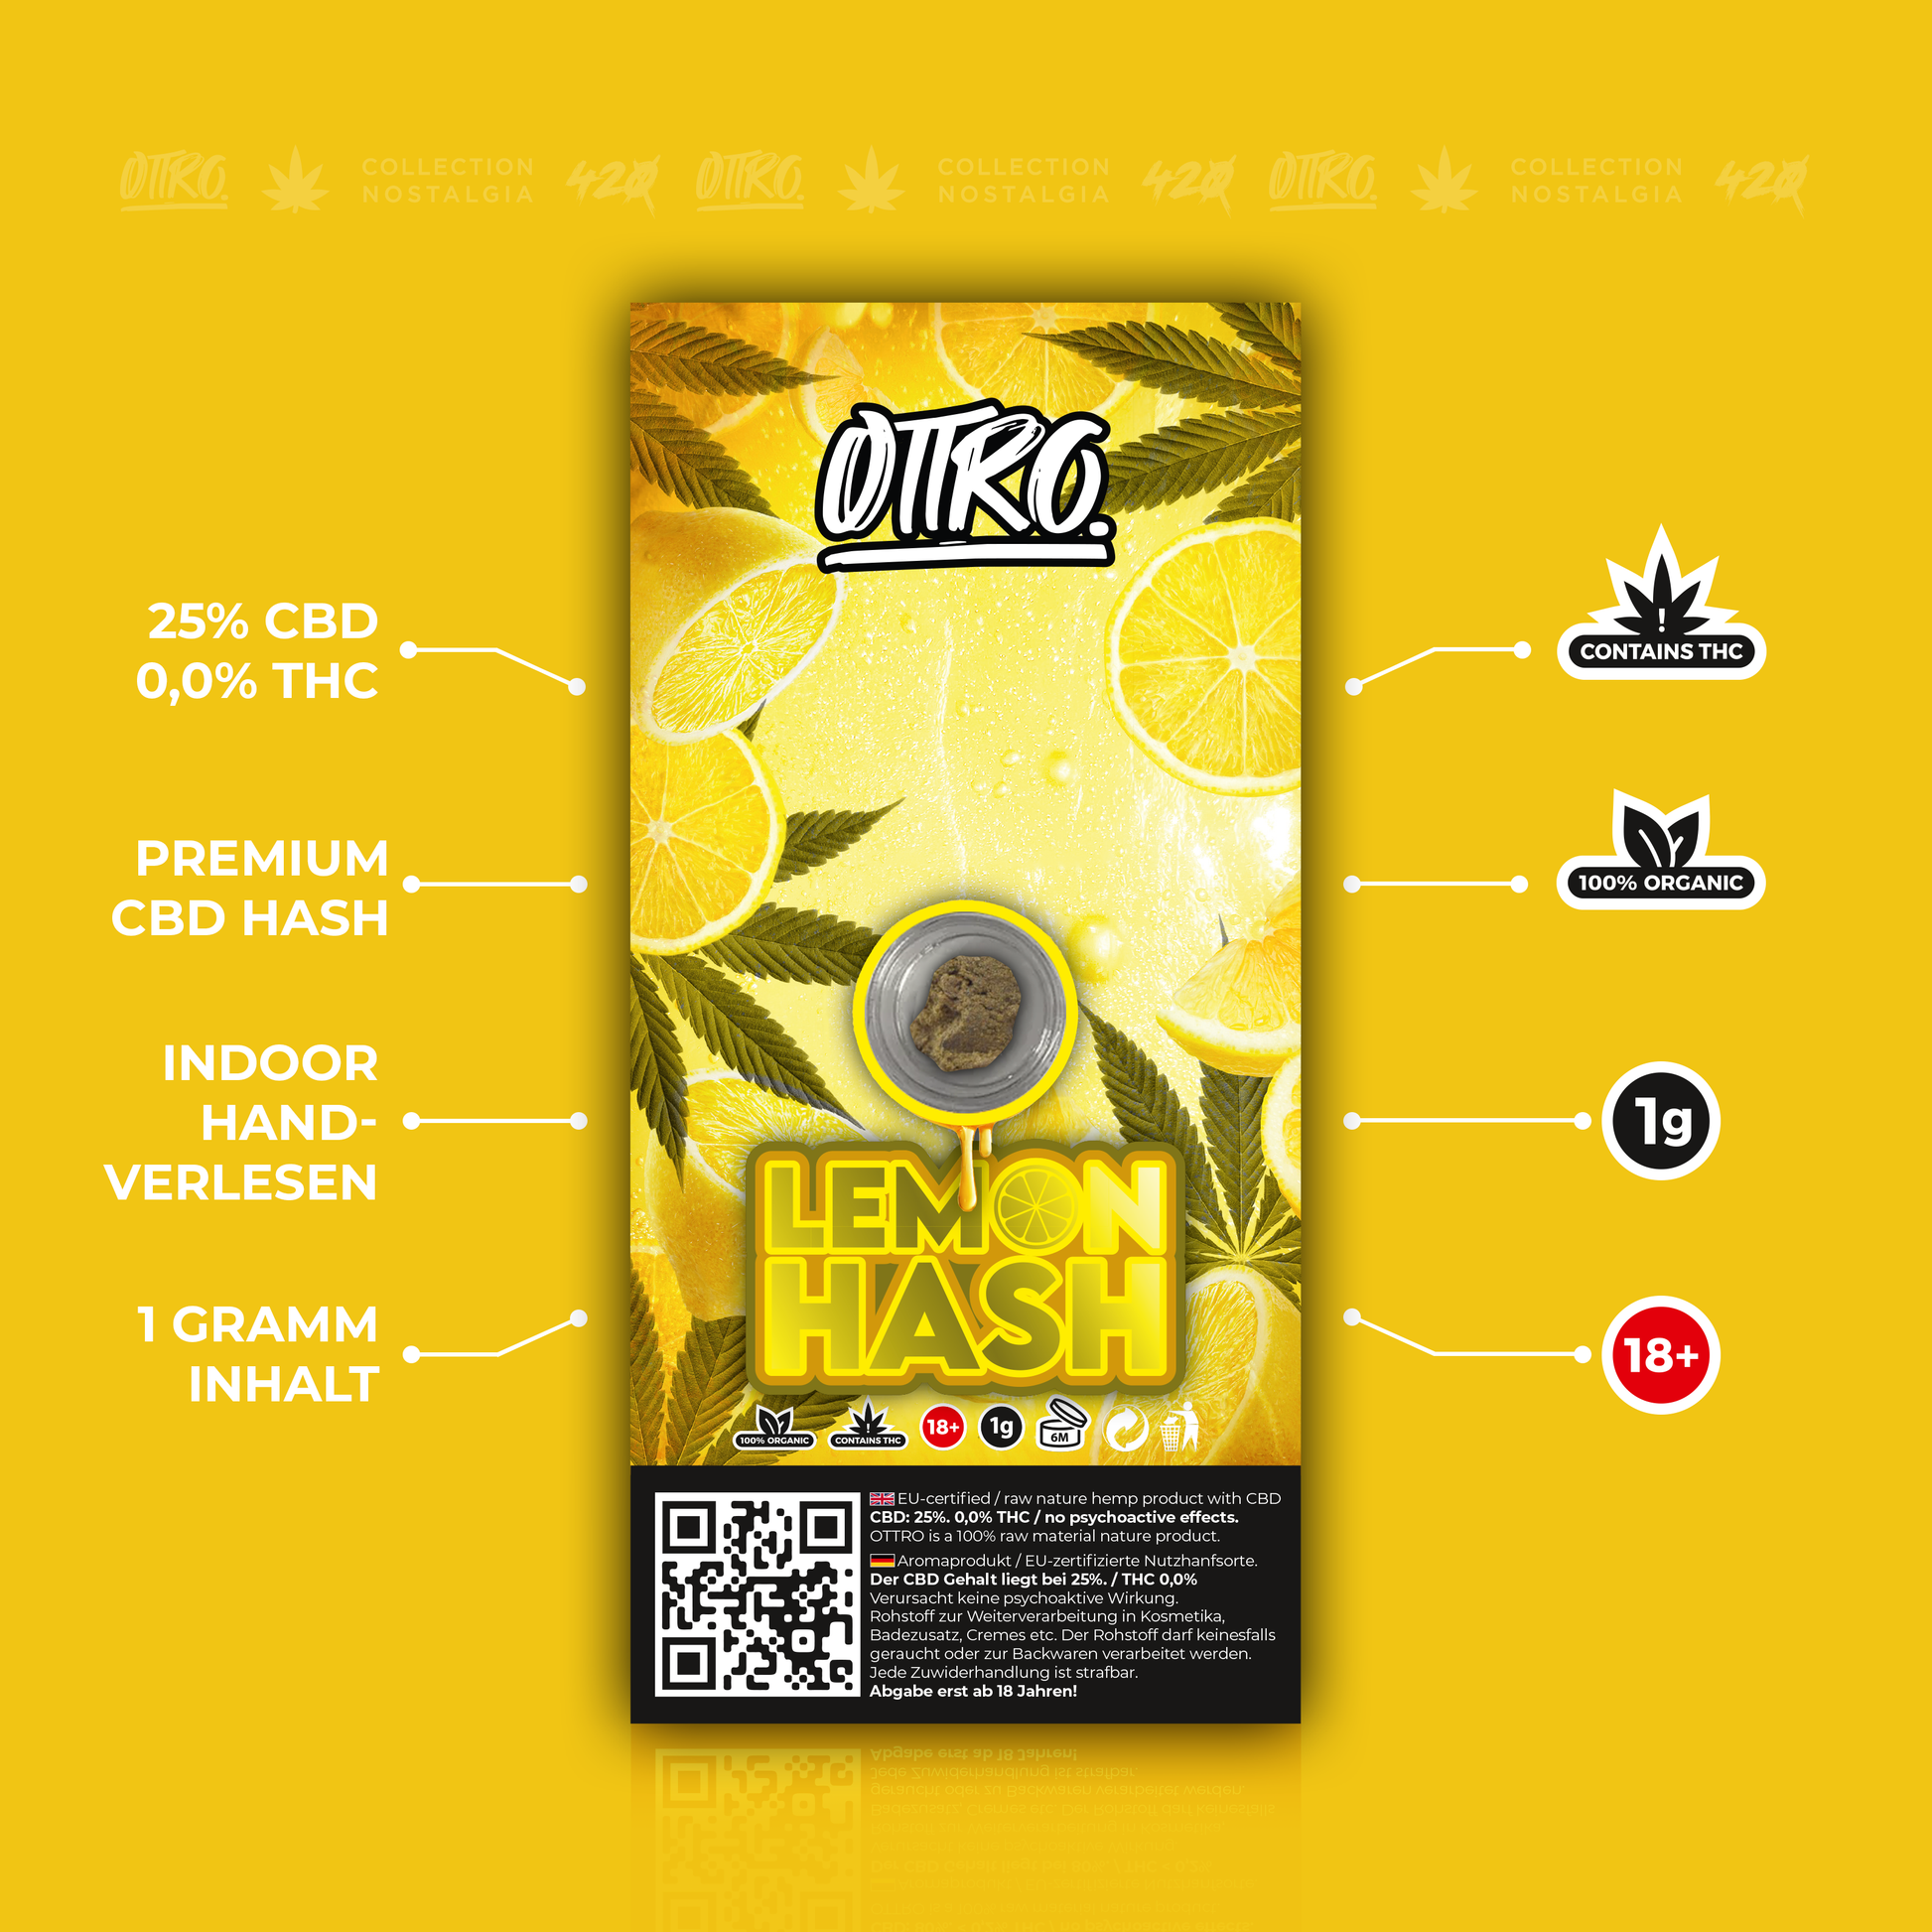 Ottro Produkt Lemon hash Frontseite beschreibungen 